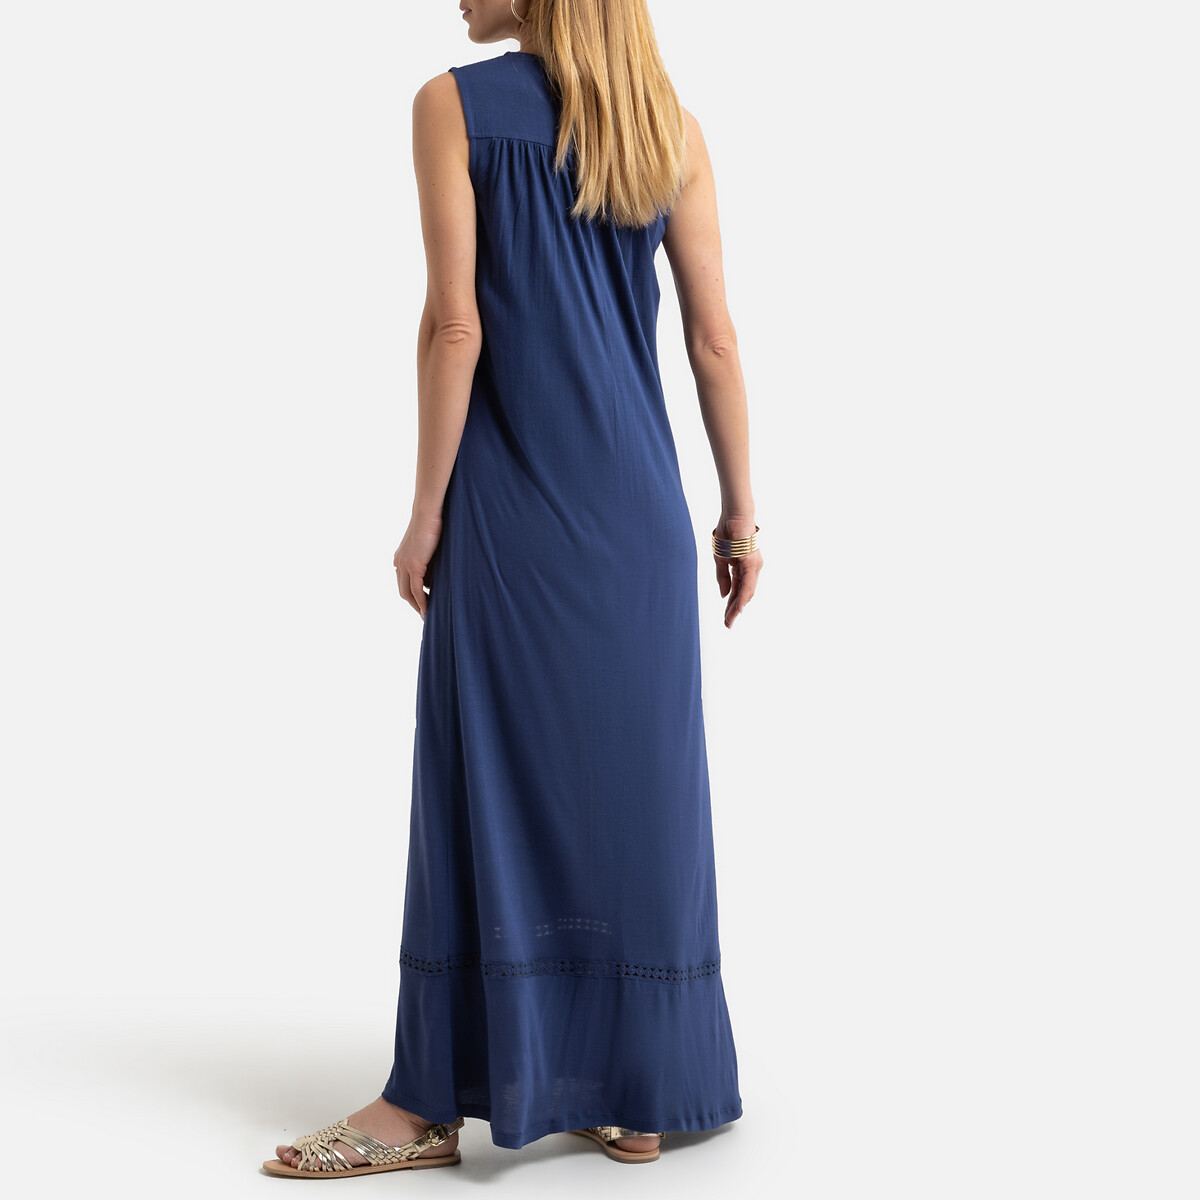 Платье LaRedoute Длинное прямое без рукавов из джерси 38 (FR) - 44 (RUS) синий, размер 38 (FR) - 44 (RUS) Длинное прямое без рукавов из джерси 38 (FR) - 44 (RUS) синий - фото 4